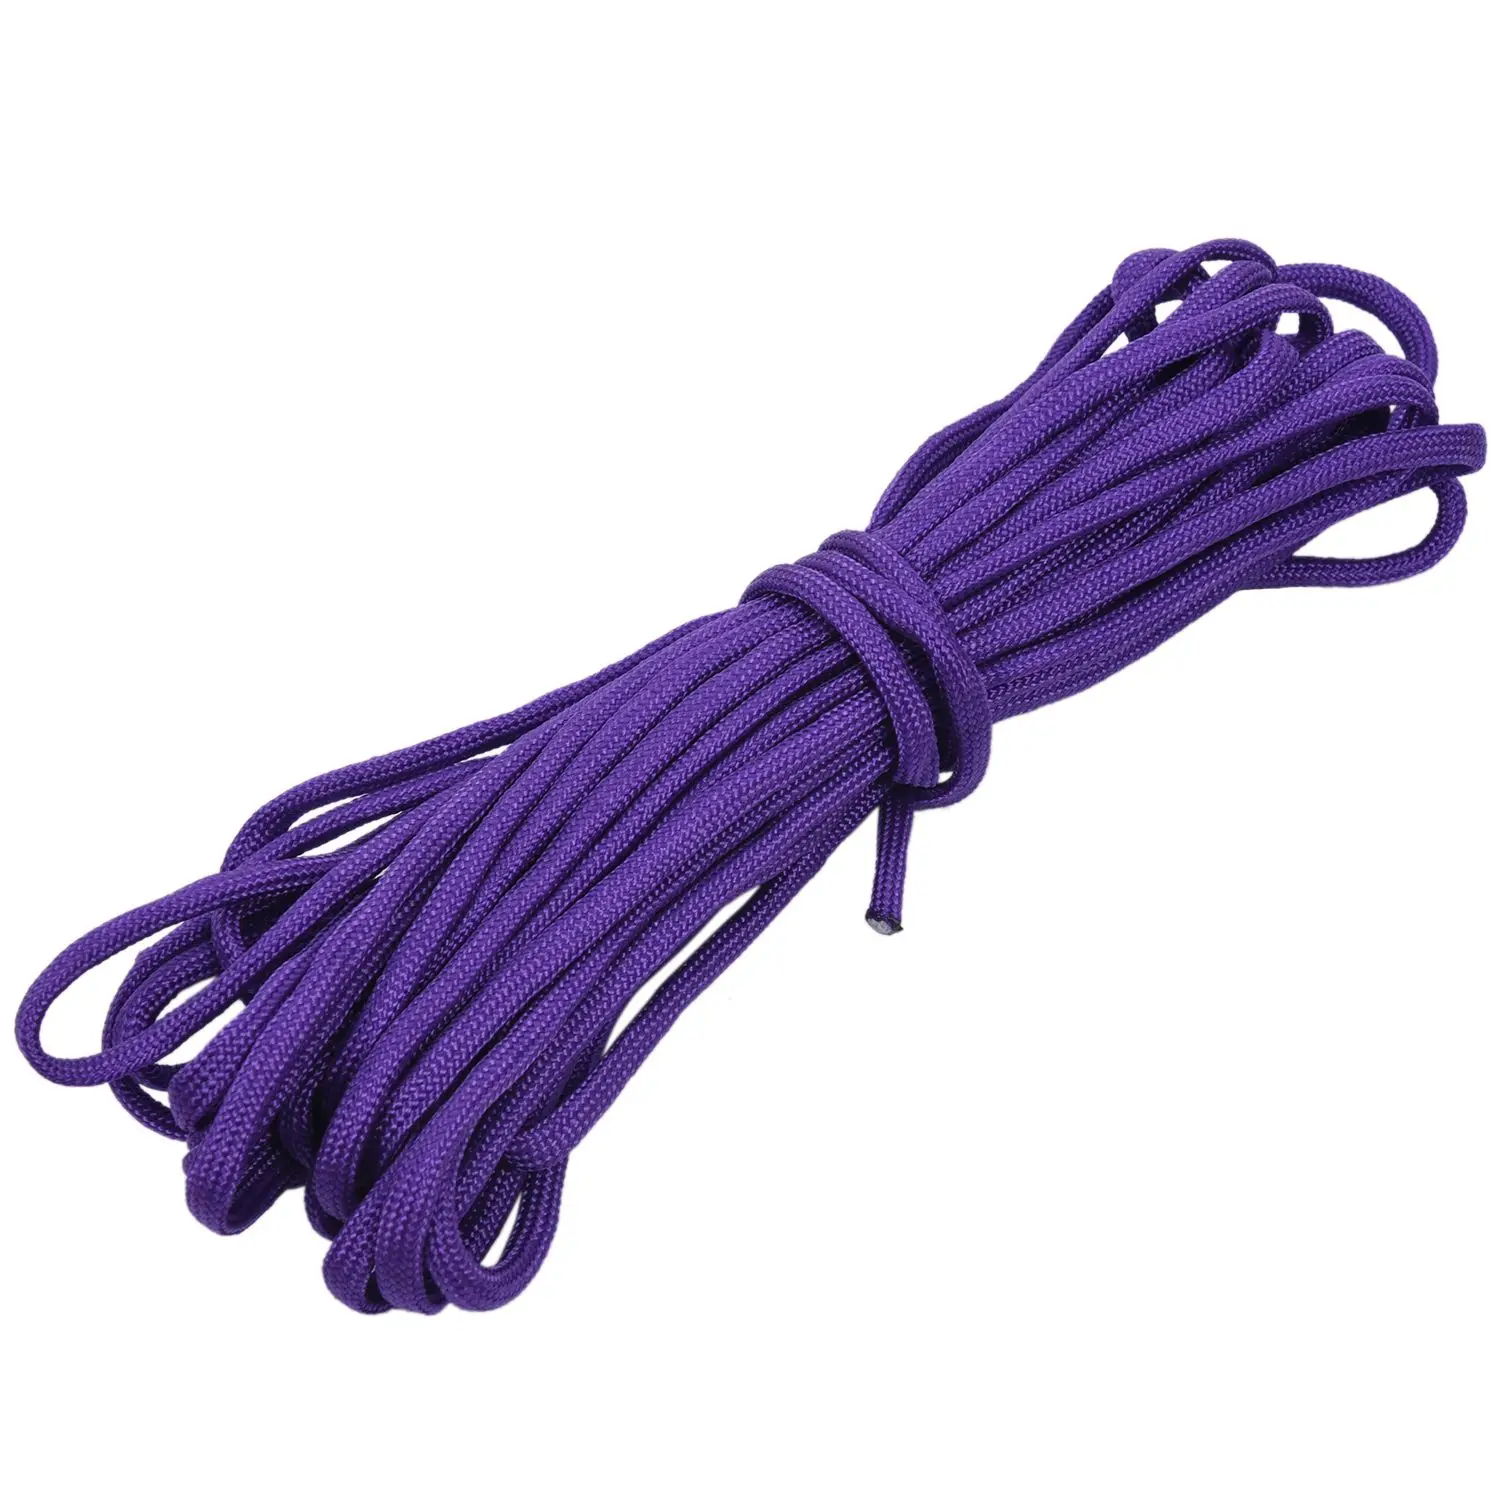 TFBC-Paracord 550 Парашютная Веревка 7 жила кабеля для альпинизма кемпинга Пряжка веревка - Цвет: Purple 8M